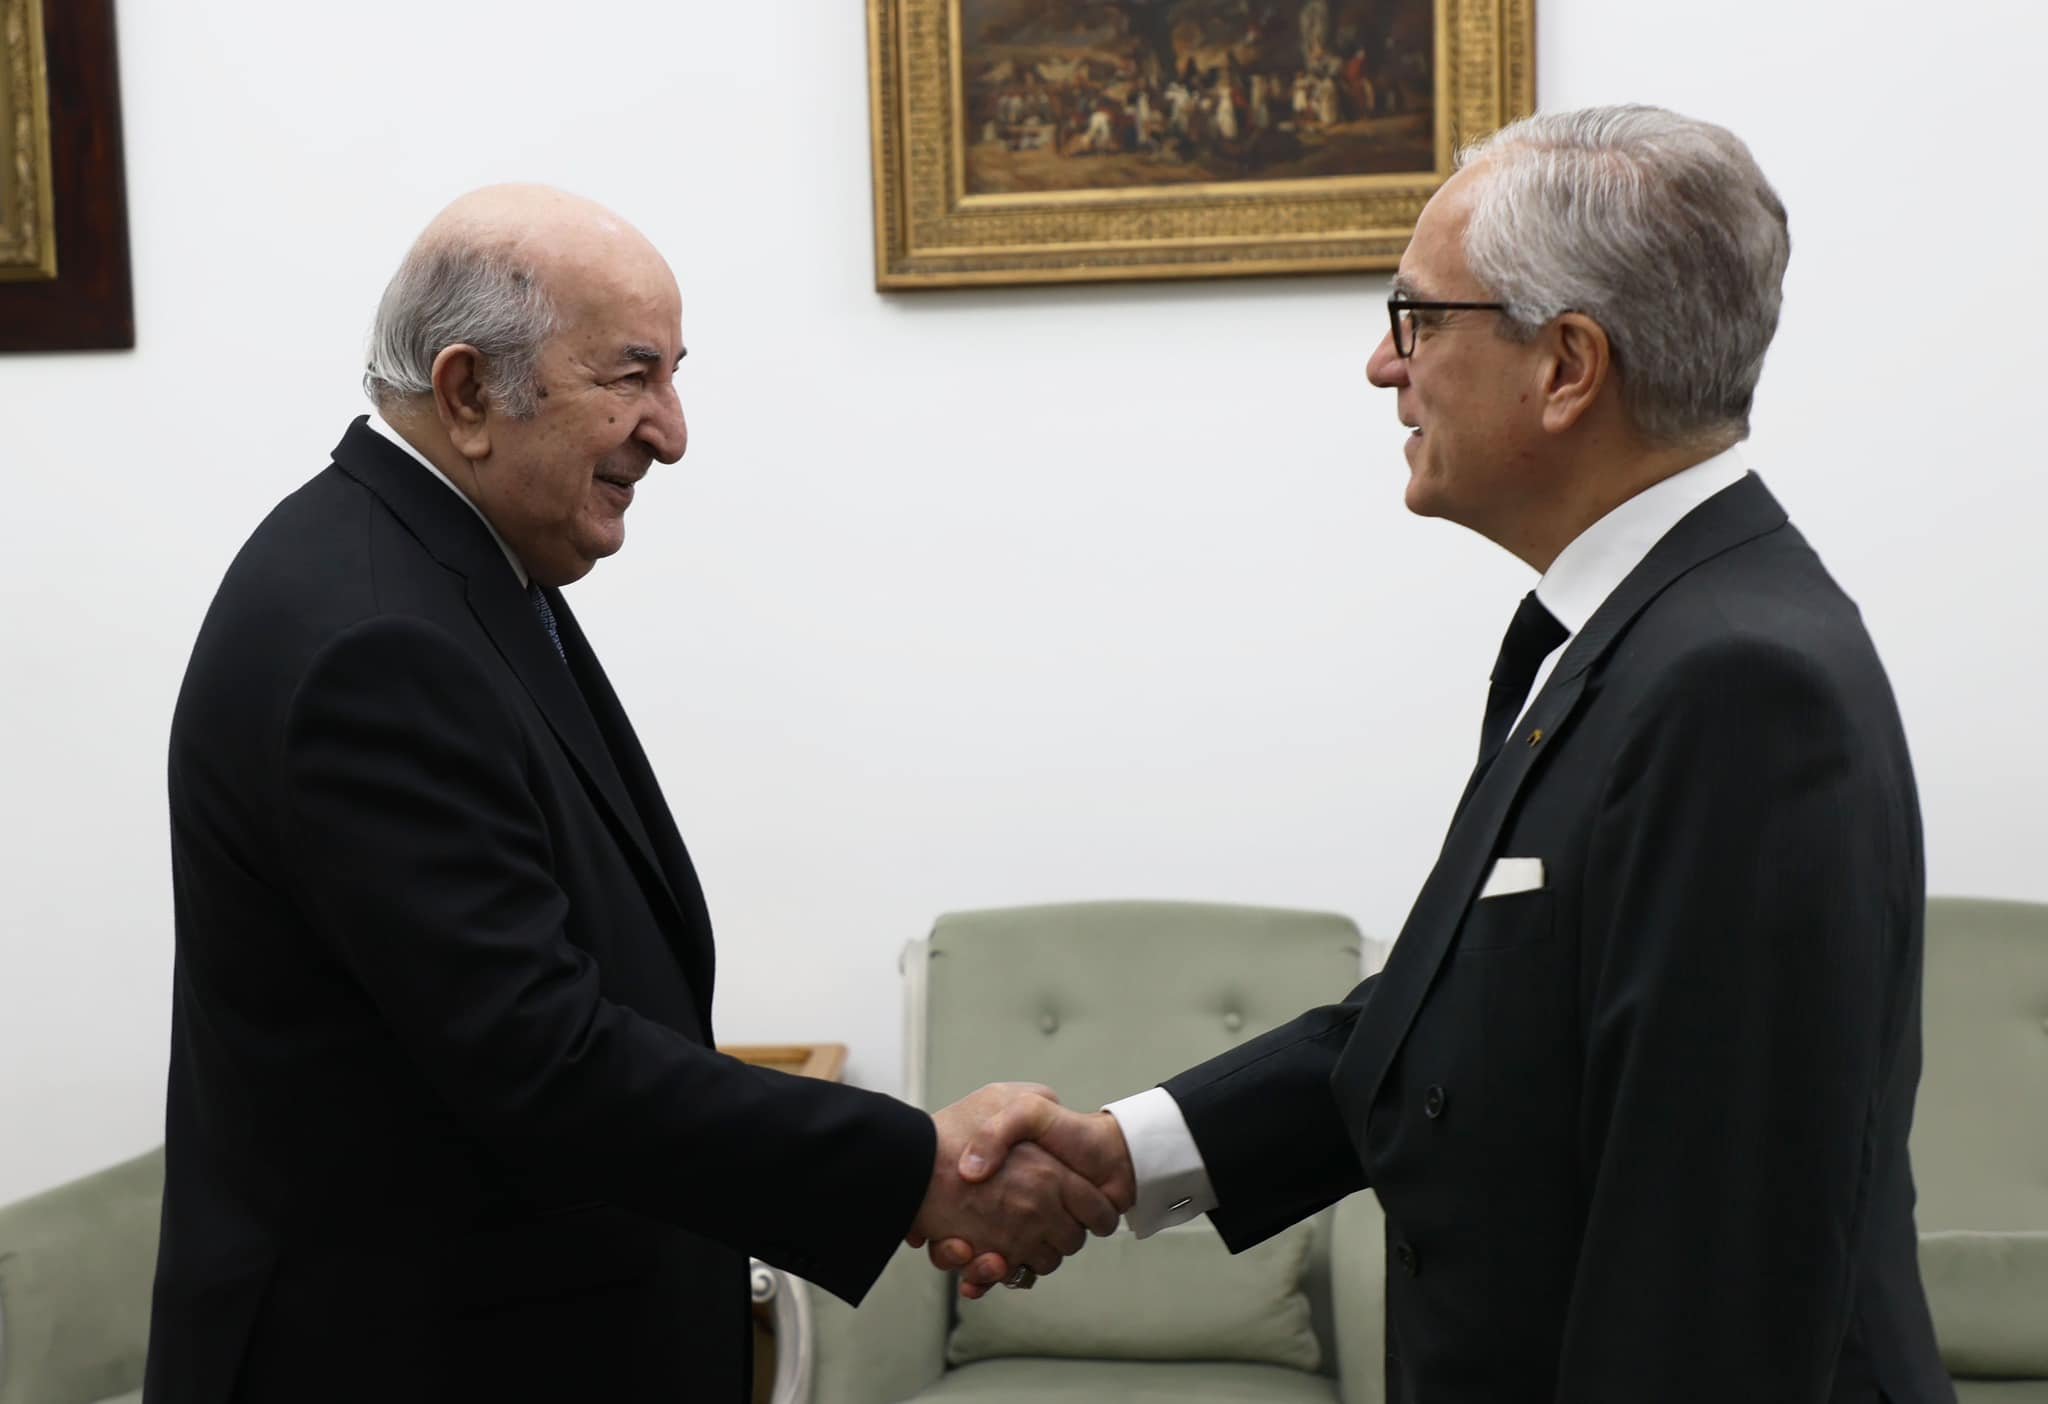 رئيس الجمهورية يستقبل سفير البرتغال لدى الجزائر